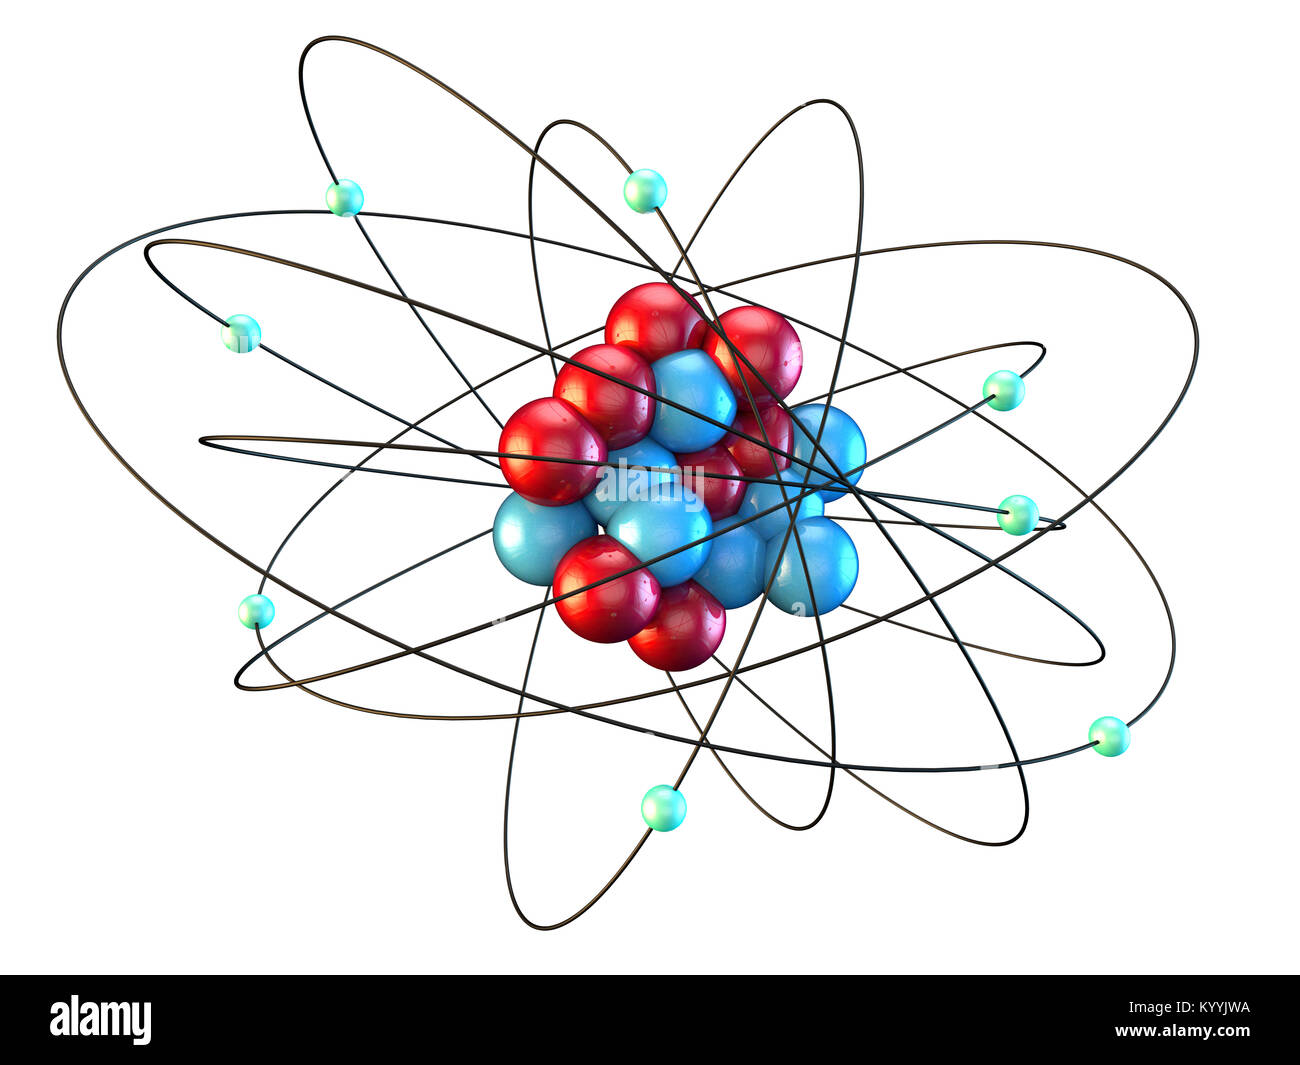 L'atome d'oxygène montrant huit électrons en orbite autour de huit protons et huit neutrons Banque D'Images